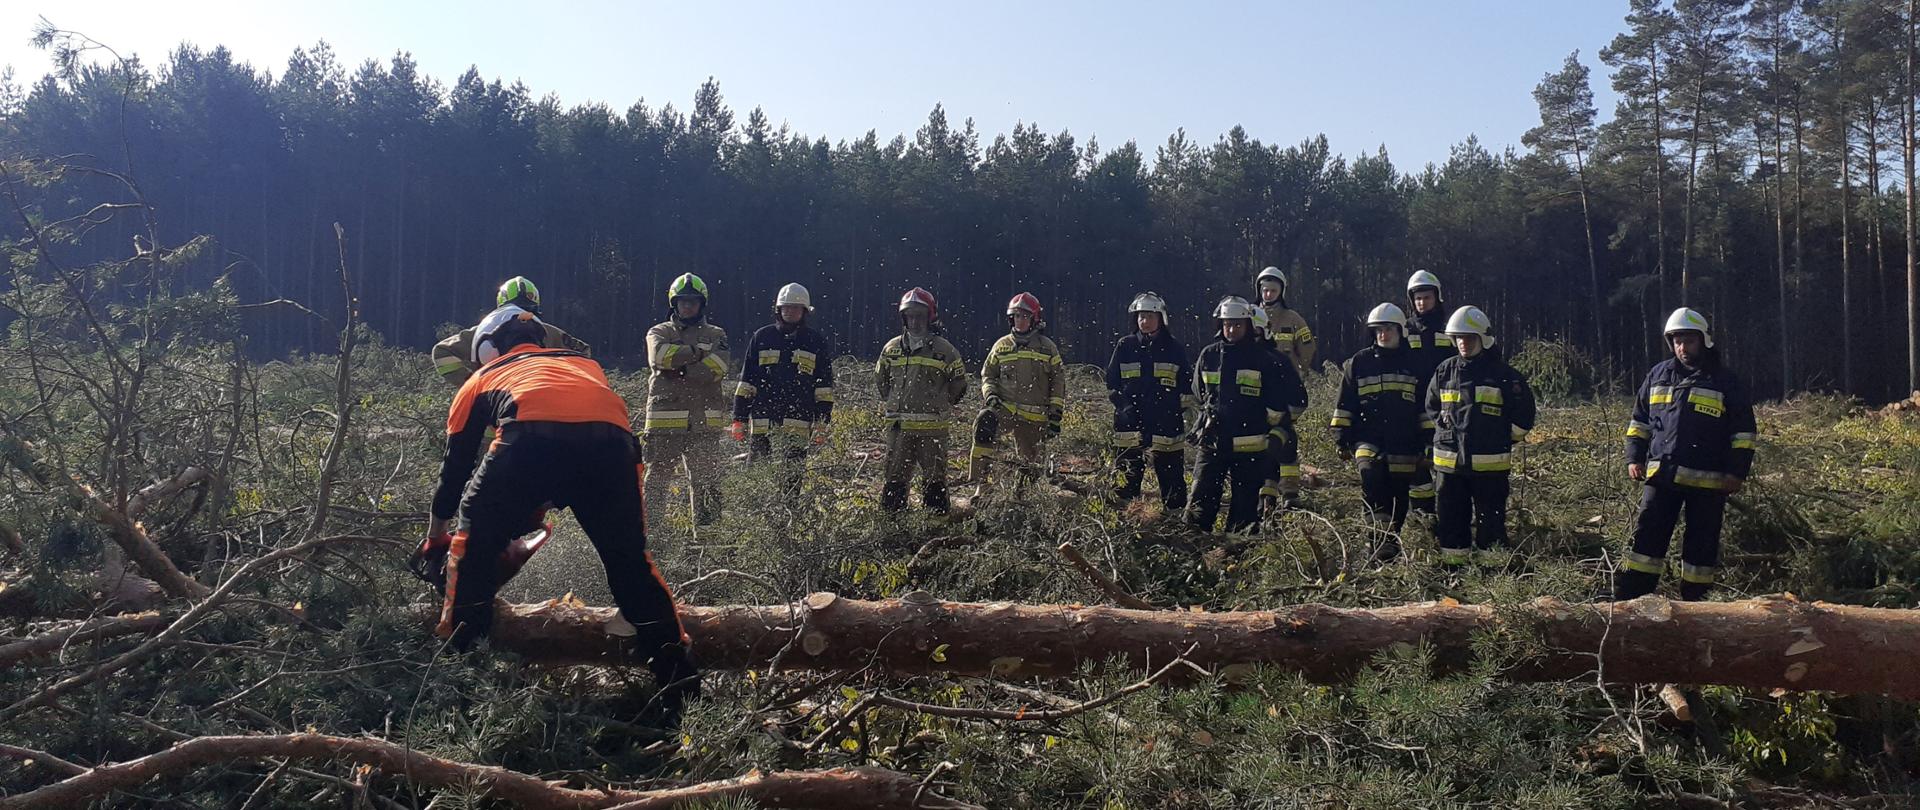 Dzień na terenie leśnego zrębu. Instruktor przedstawia grupie strażaków technikę okrzesywania drzewa.